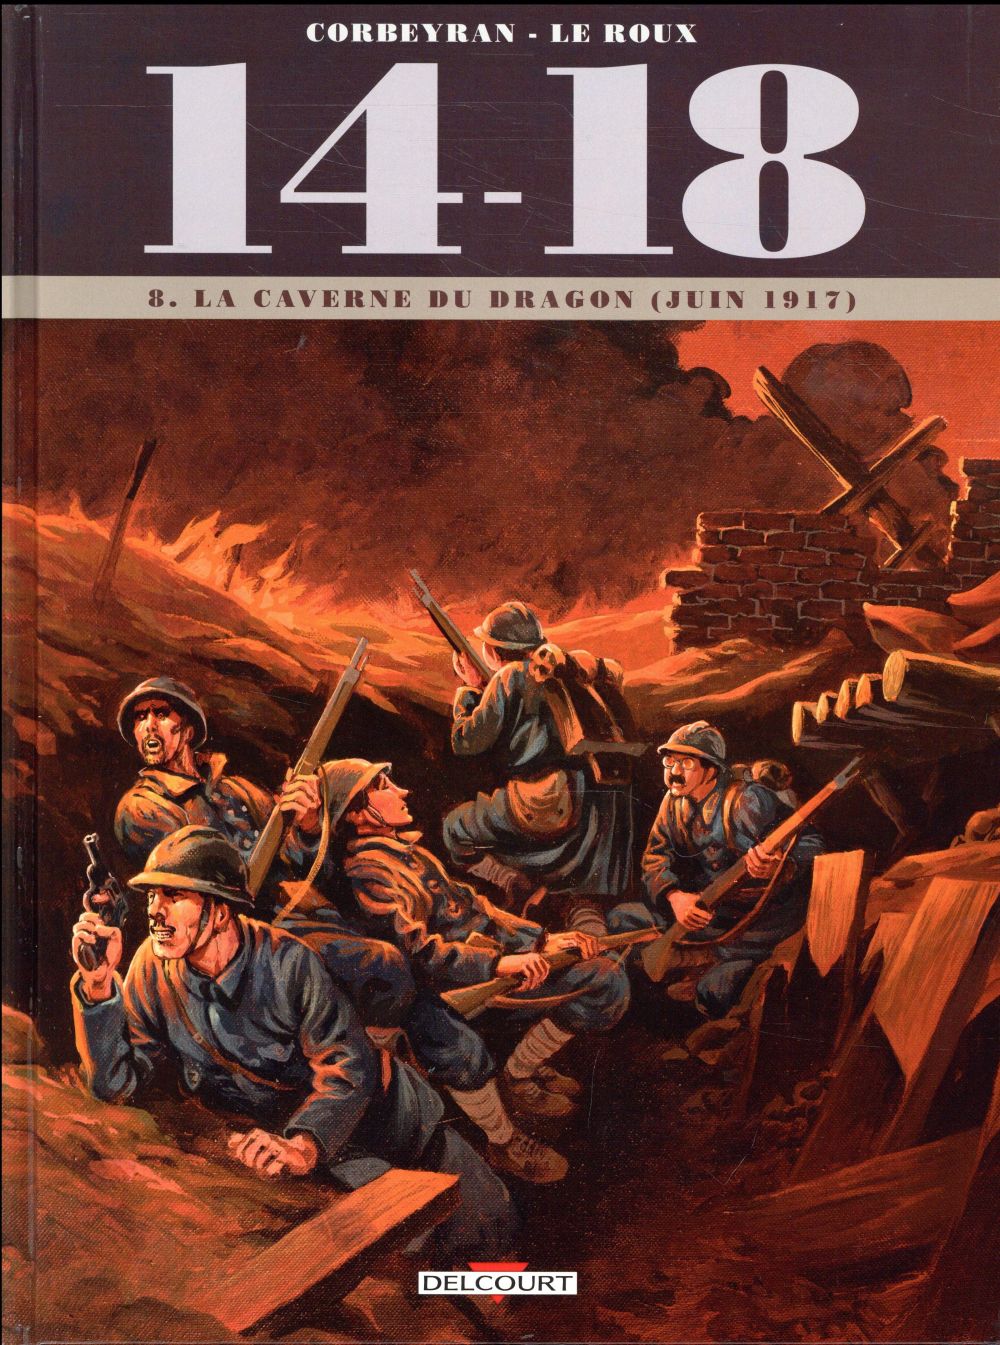 14 - 18 T08 - LA CAVERNE DU DRAGON (JUIN 1917)